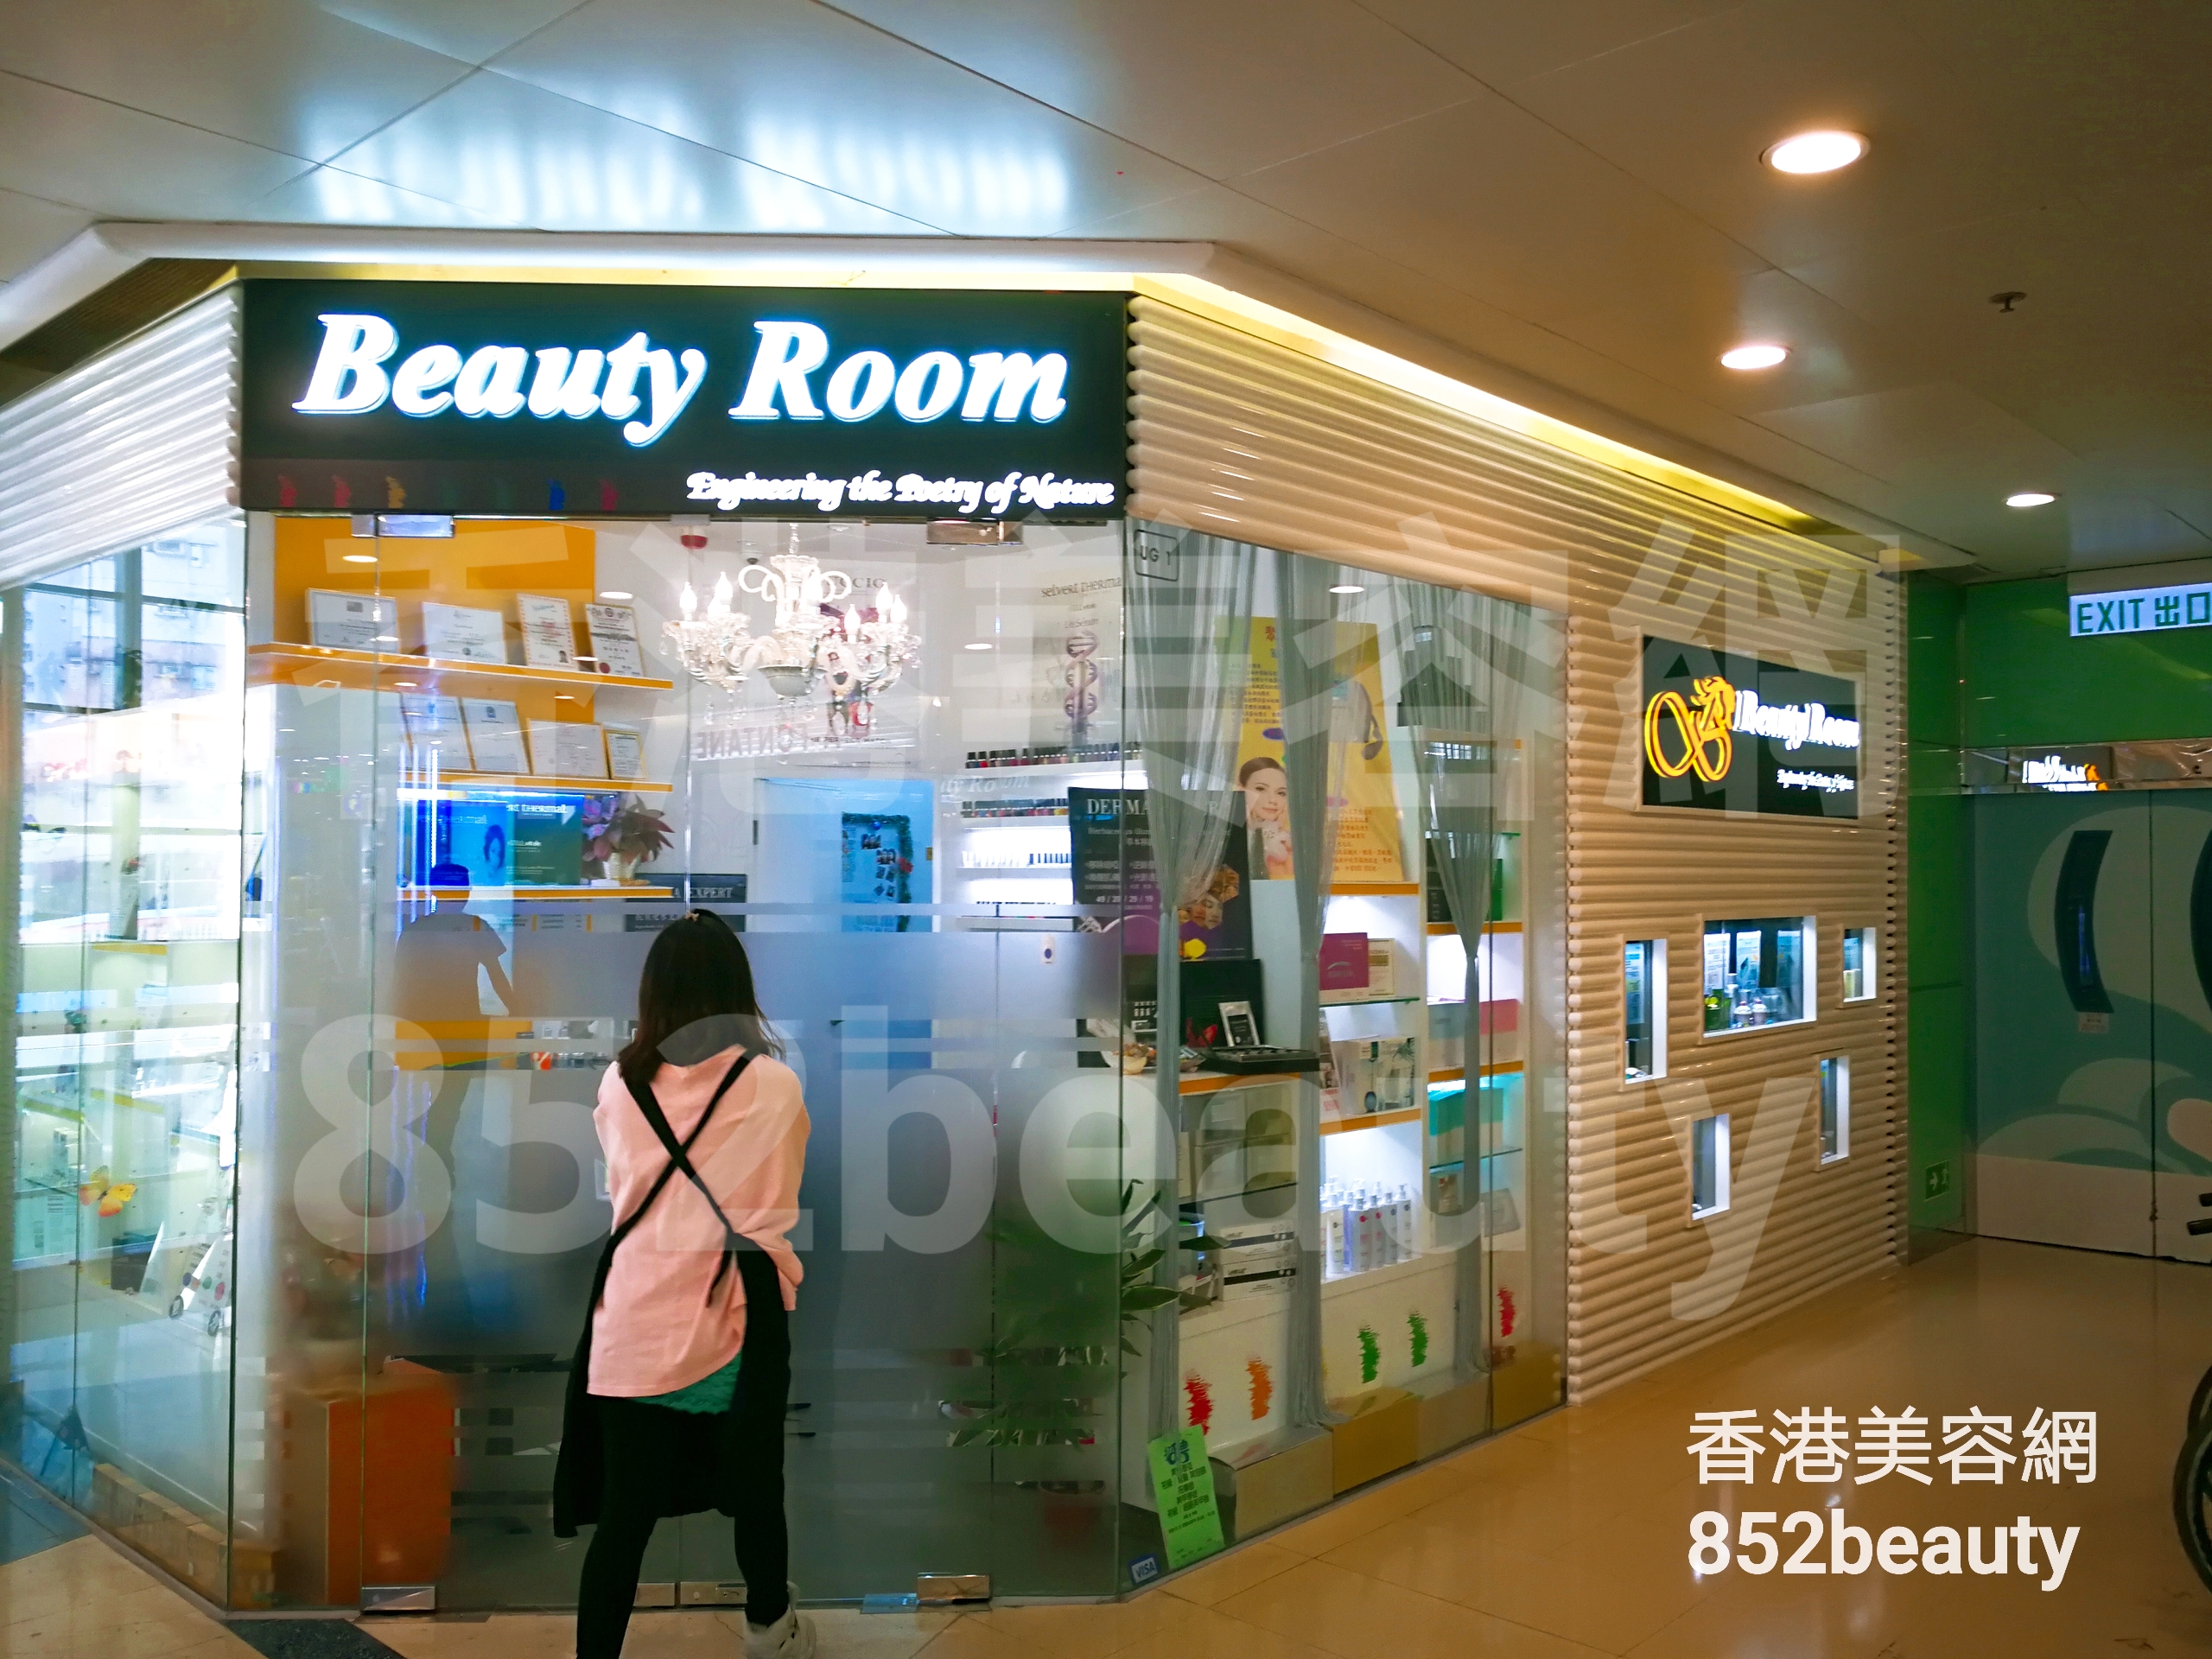 美容院 Beauty Salon: Beauty Room